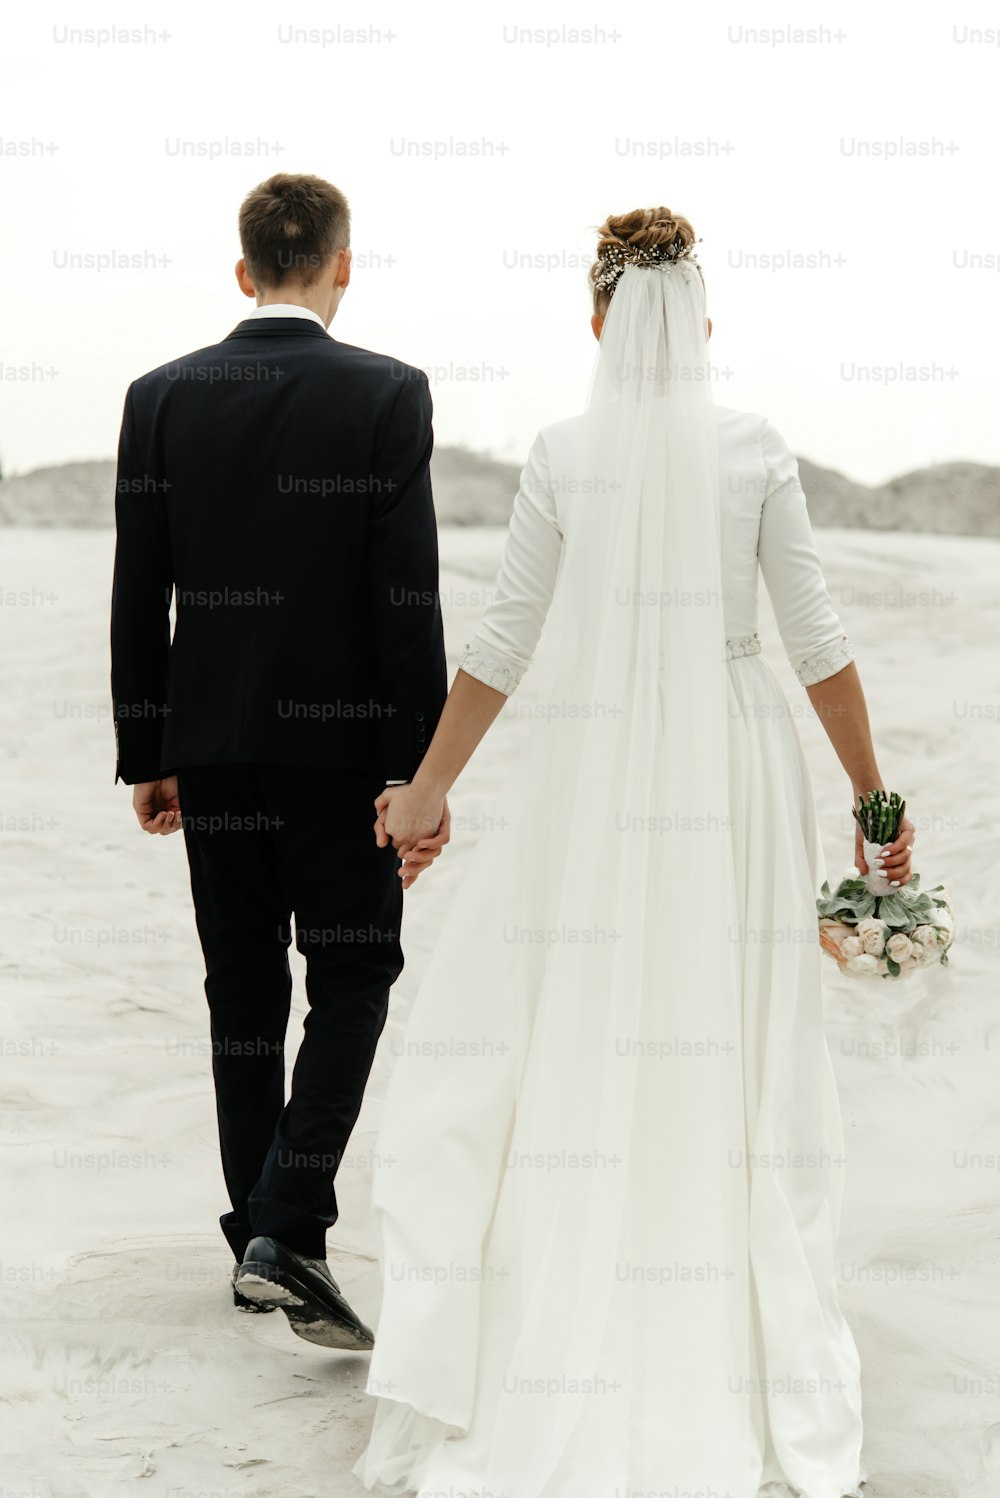 hermosa novia y novio caminando tomados de la mano y mirándose el uno al otro en el lago de arena de la playa, verdaderas emociones